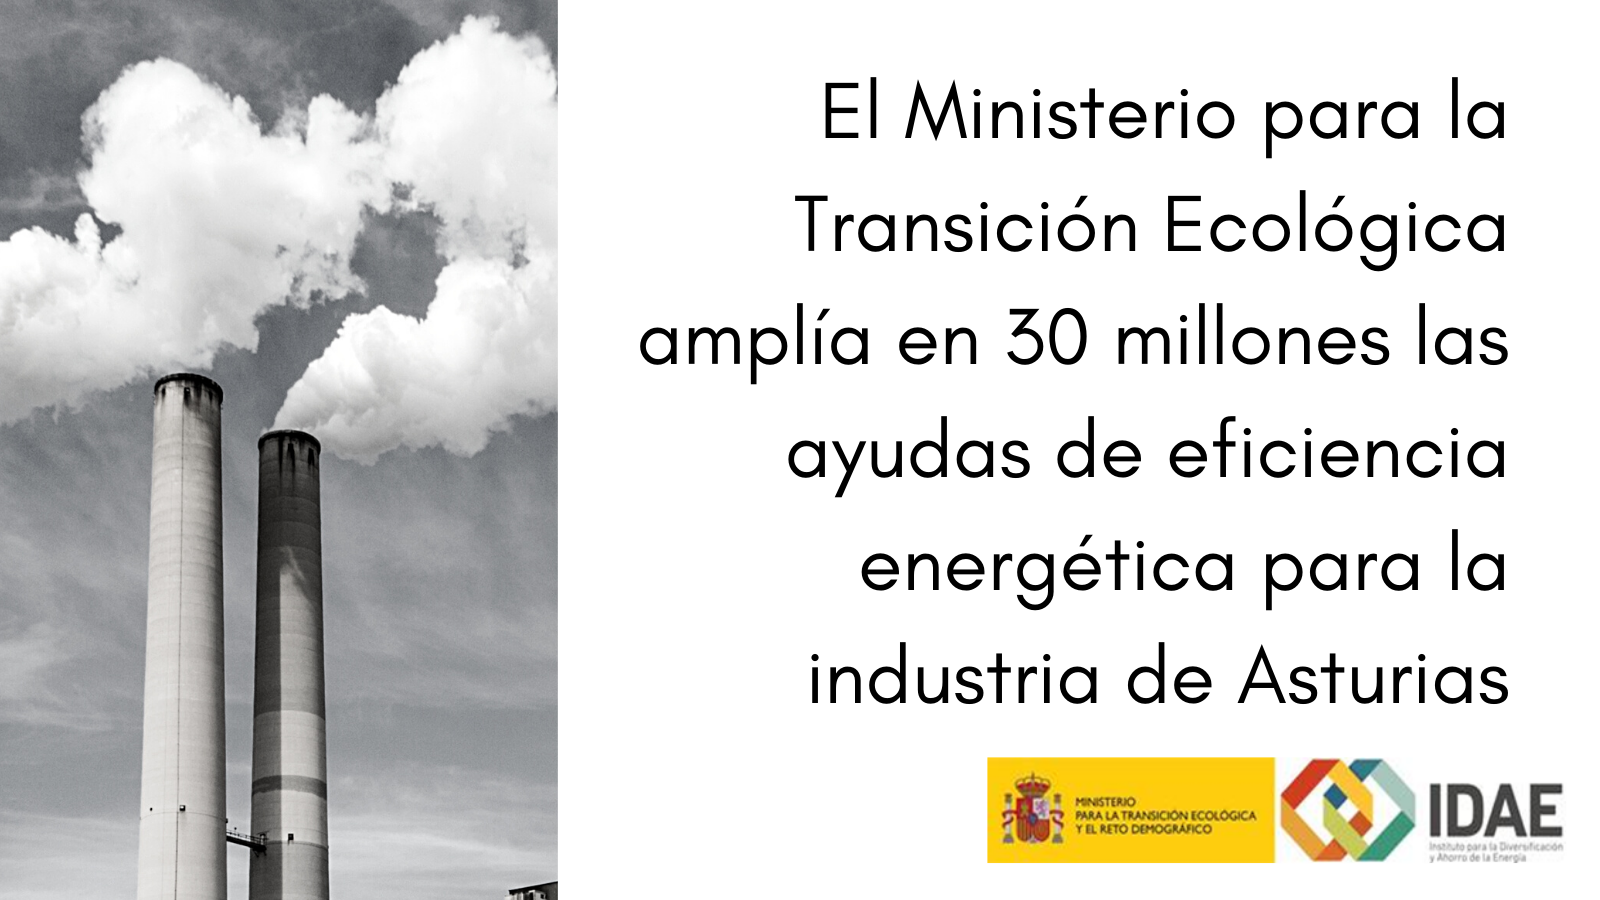 El MITECO amplía en 30 millones las ayudas de eficiencia energética para la industria de Asturias